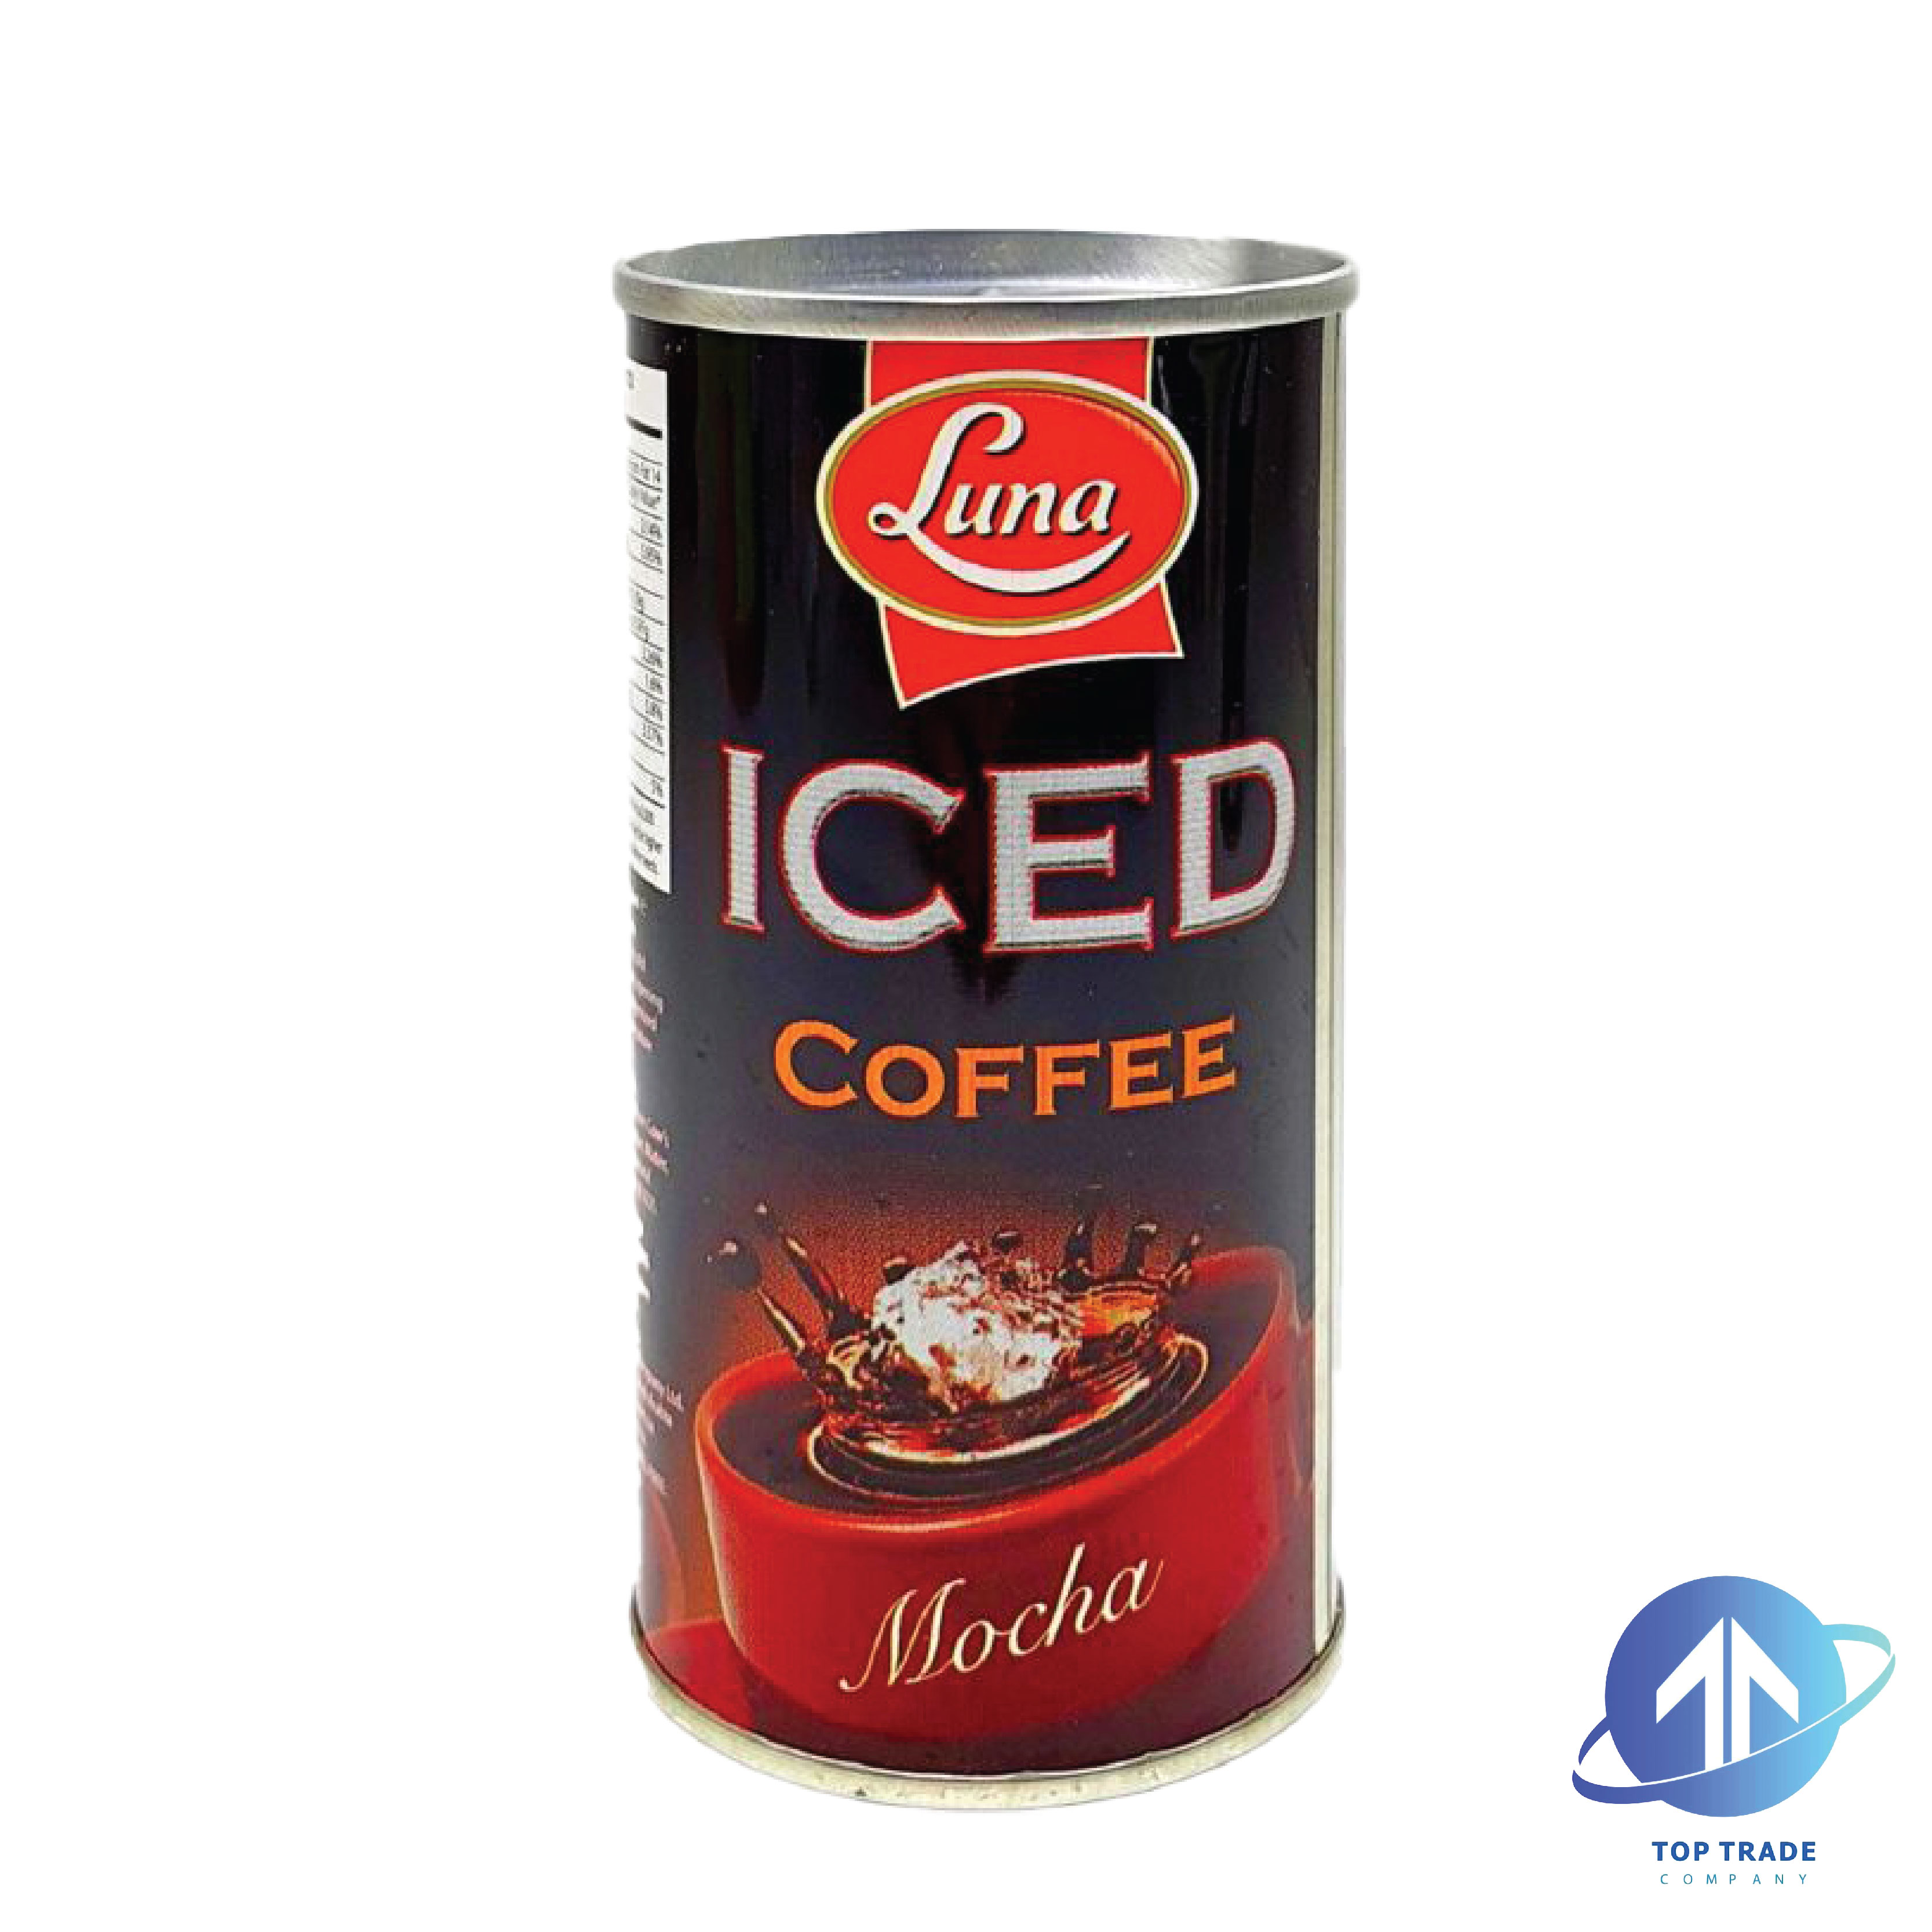 Luna Iced Coffee Mocha 190ML